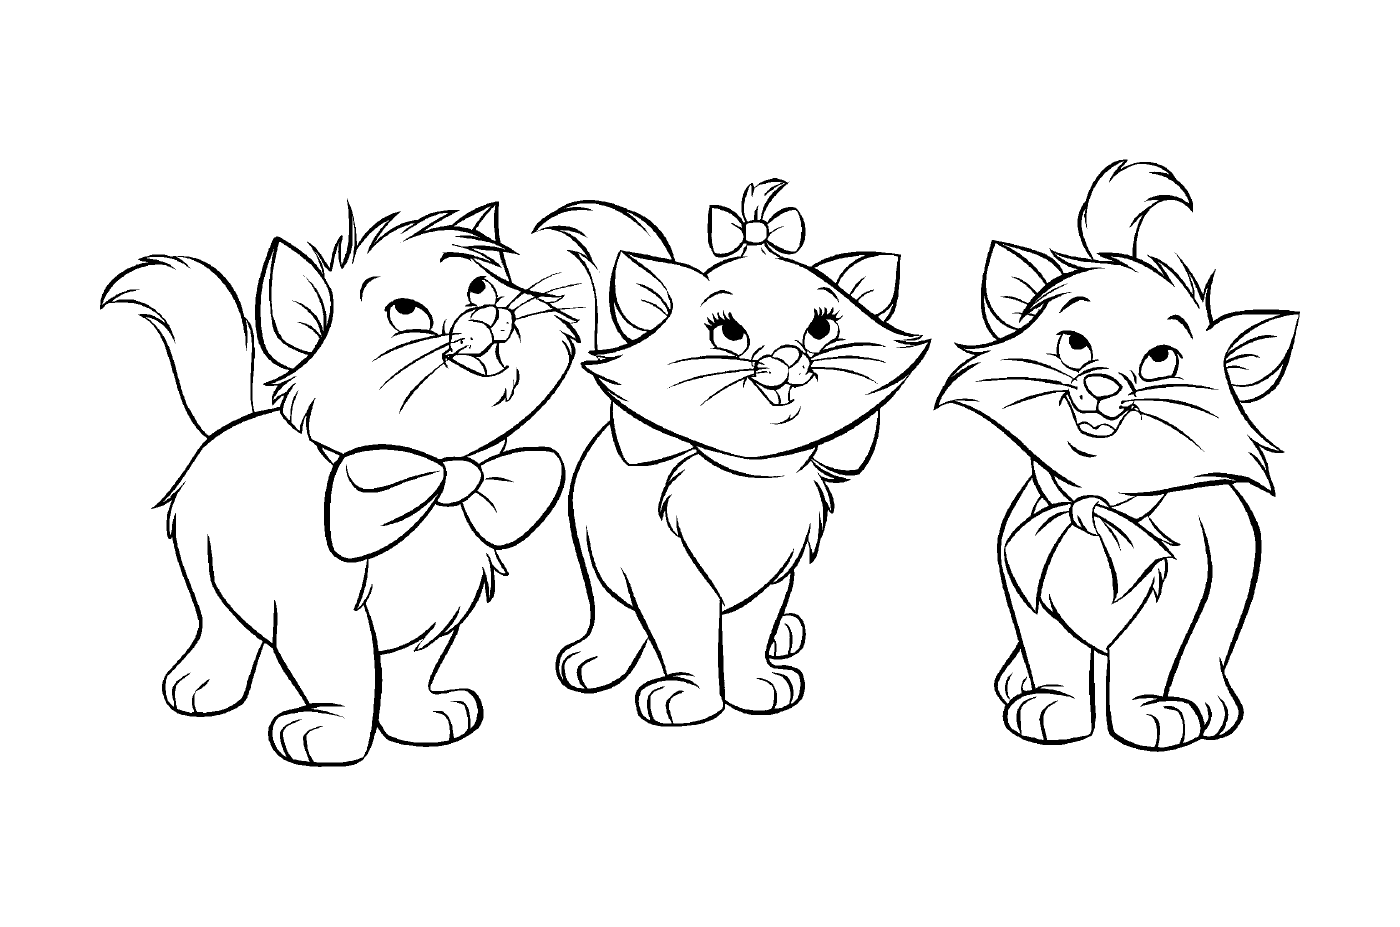  Группа из трёх кошек, стоящих вместе 